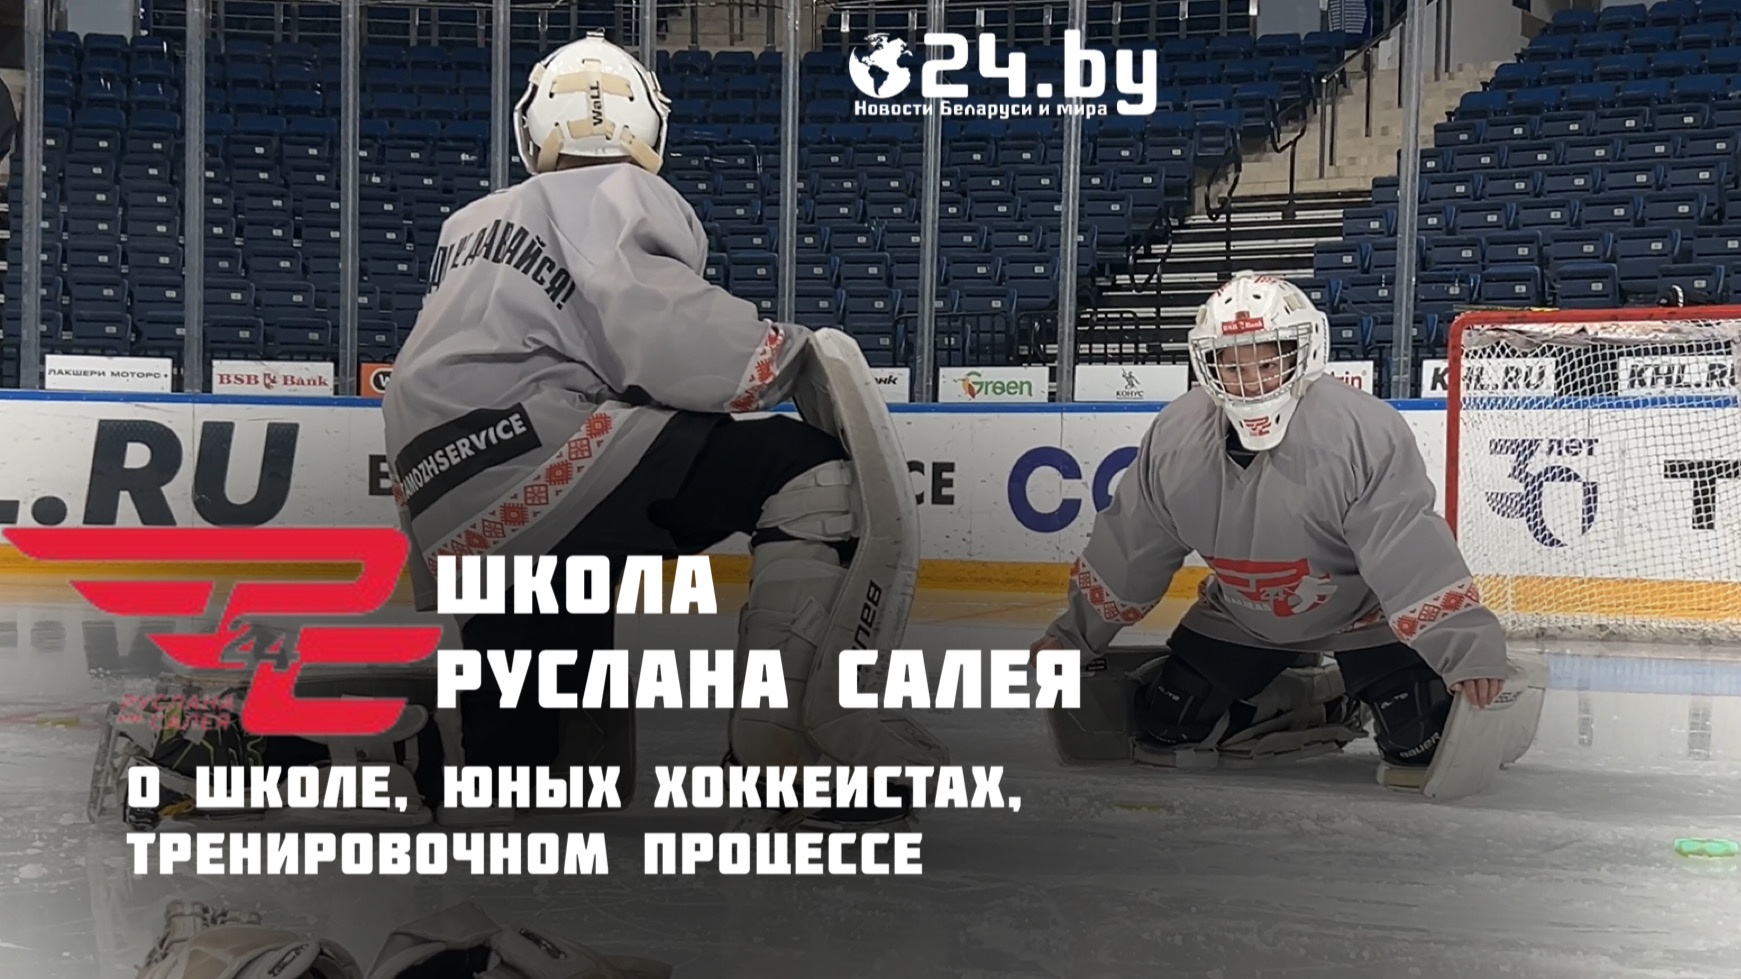 Как развивается белорусский хоккей. Один день в СДЮШОР имени Руслана Салея.